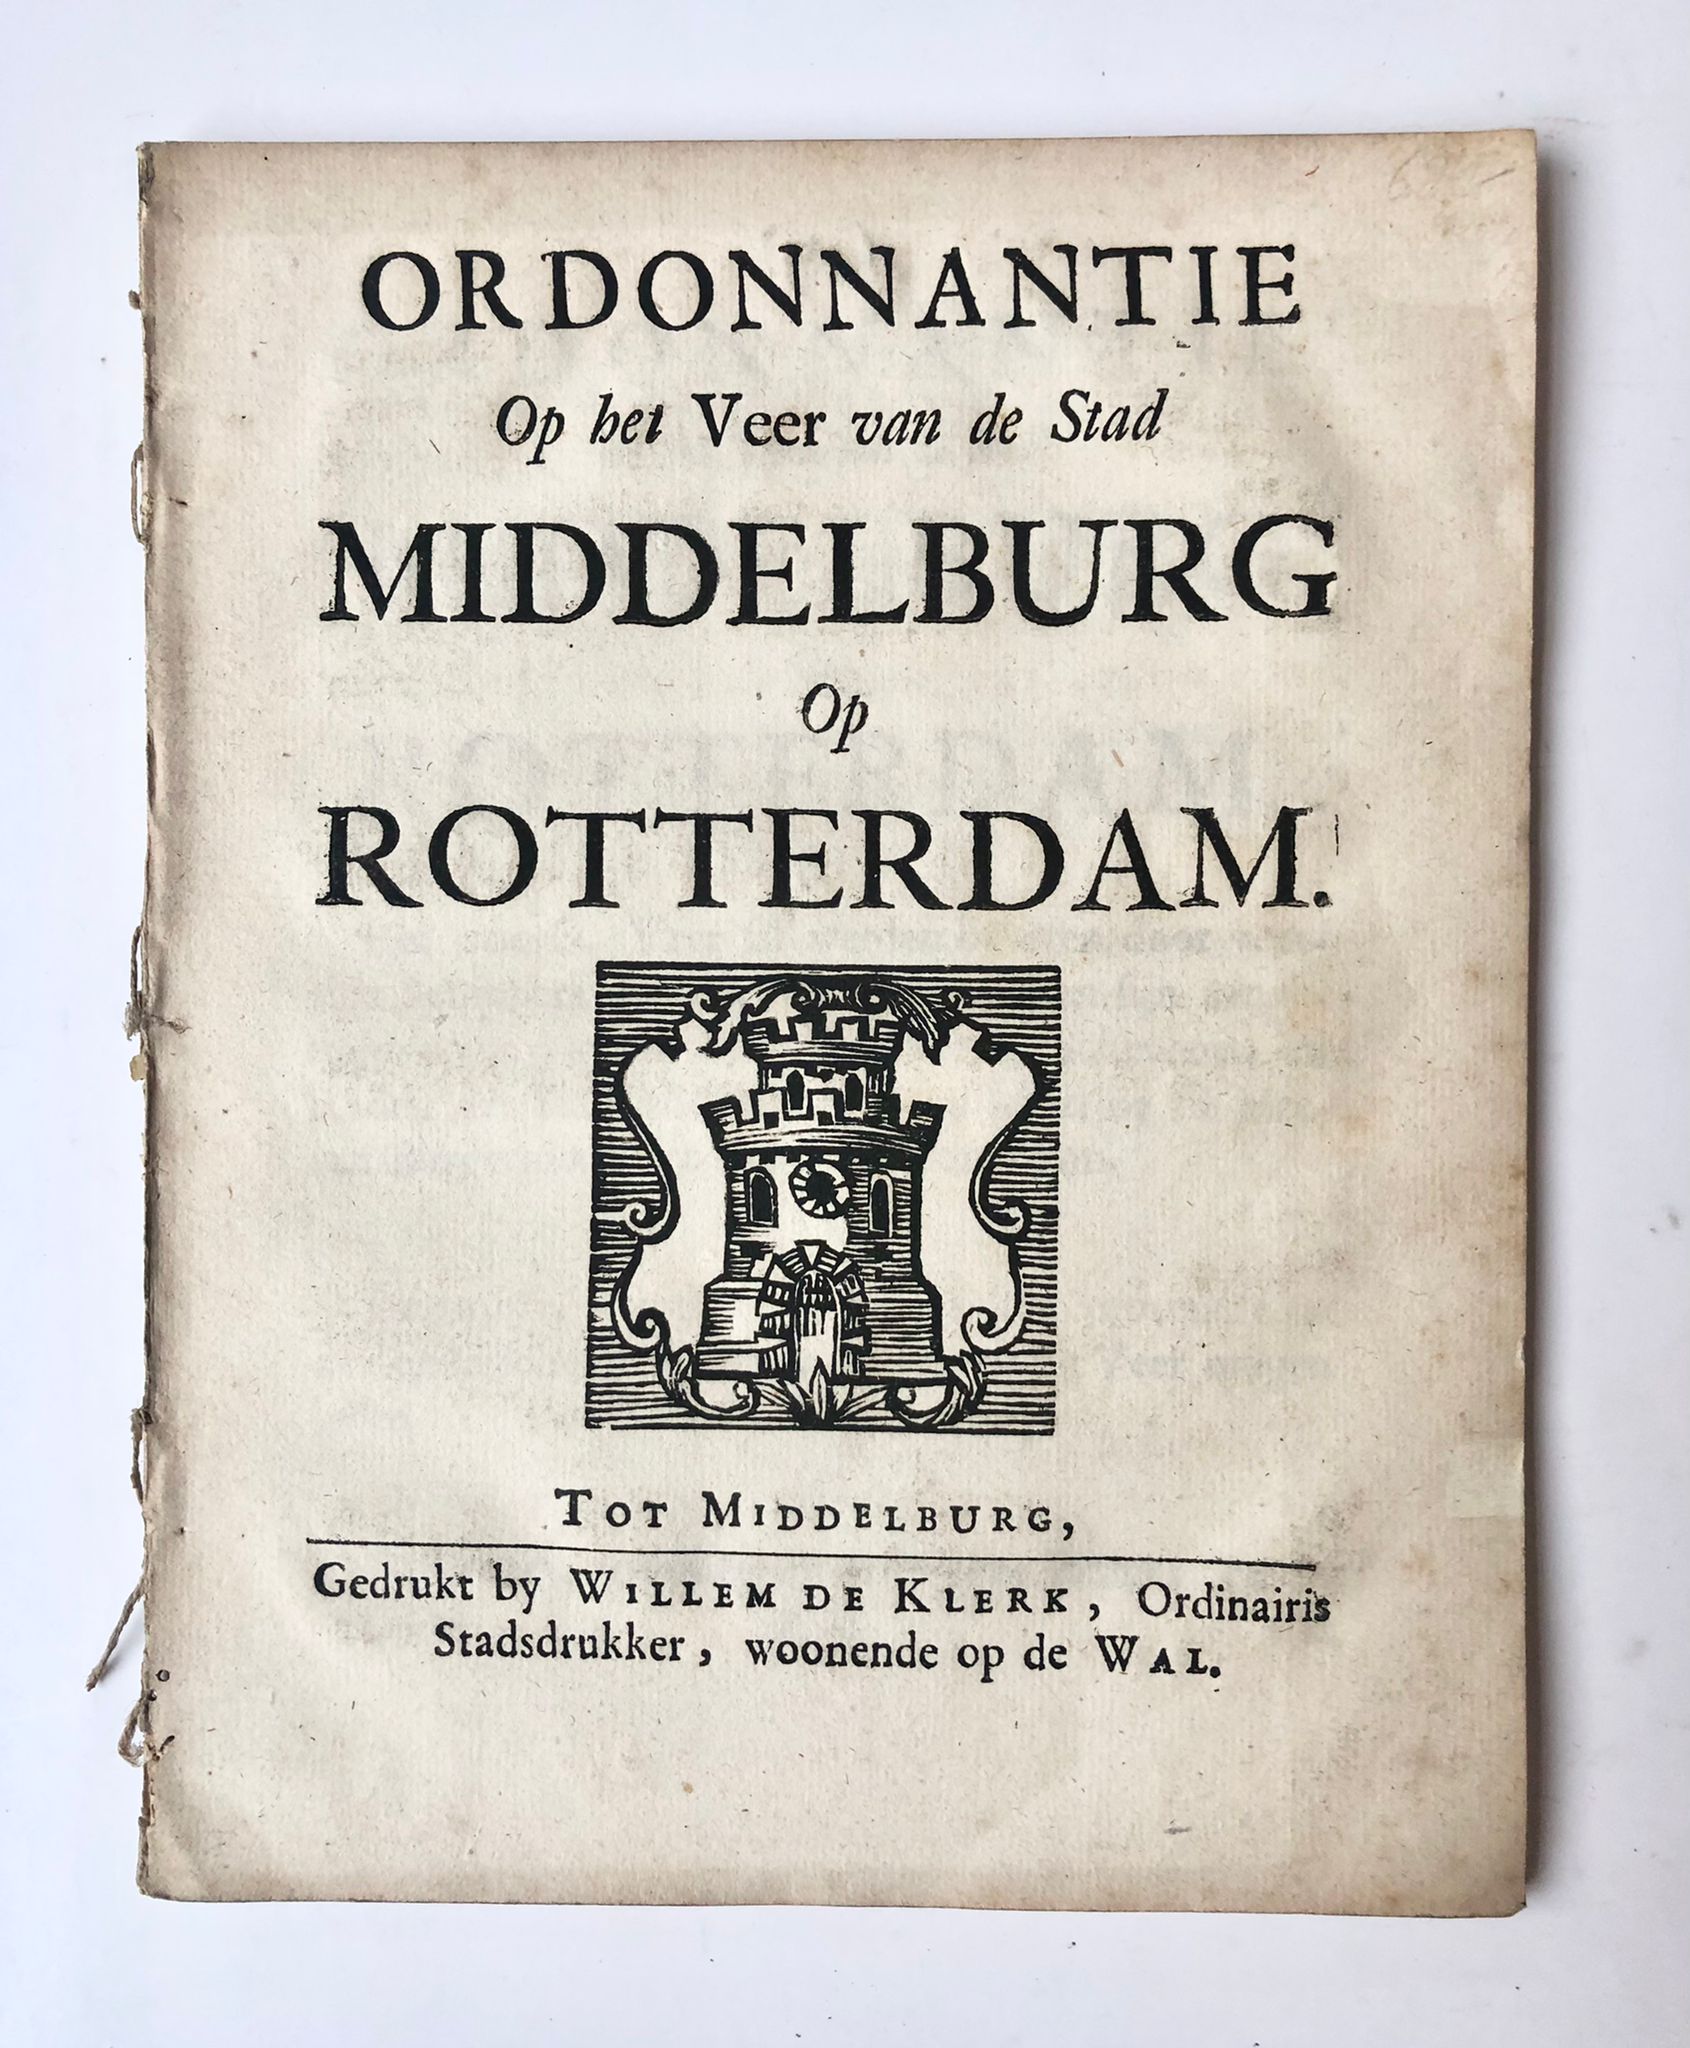 [Middelburg, Zeeland, [ca 1740]] Ordonnantie op het Veer van de Stad Middelburg op Rotterdam, gedrukt by Willem de Klerk, Tot Middelburg, [1740], 32 pp.